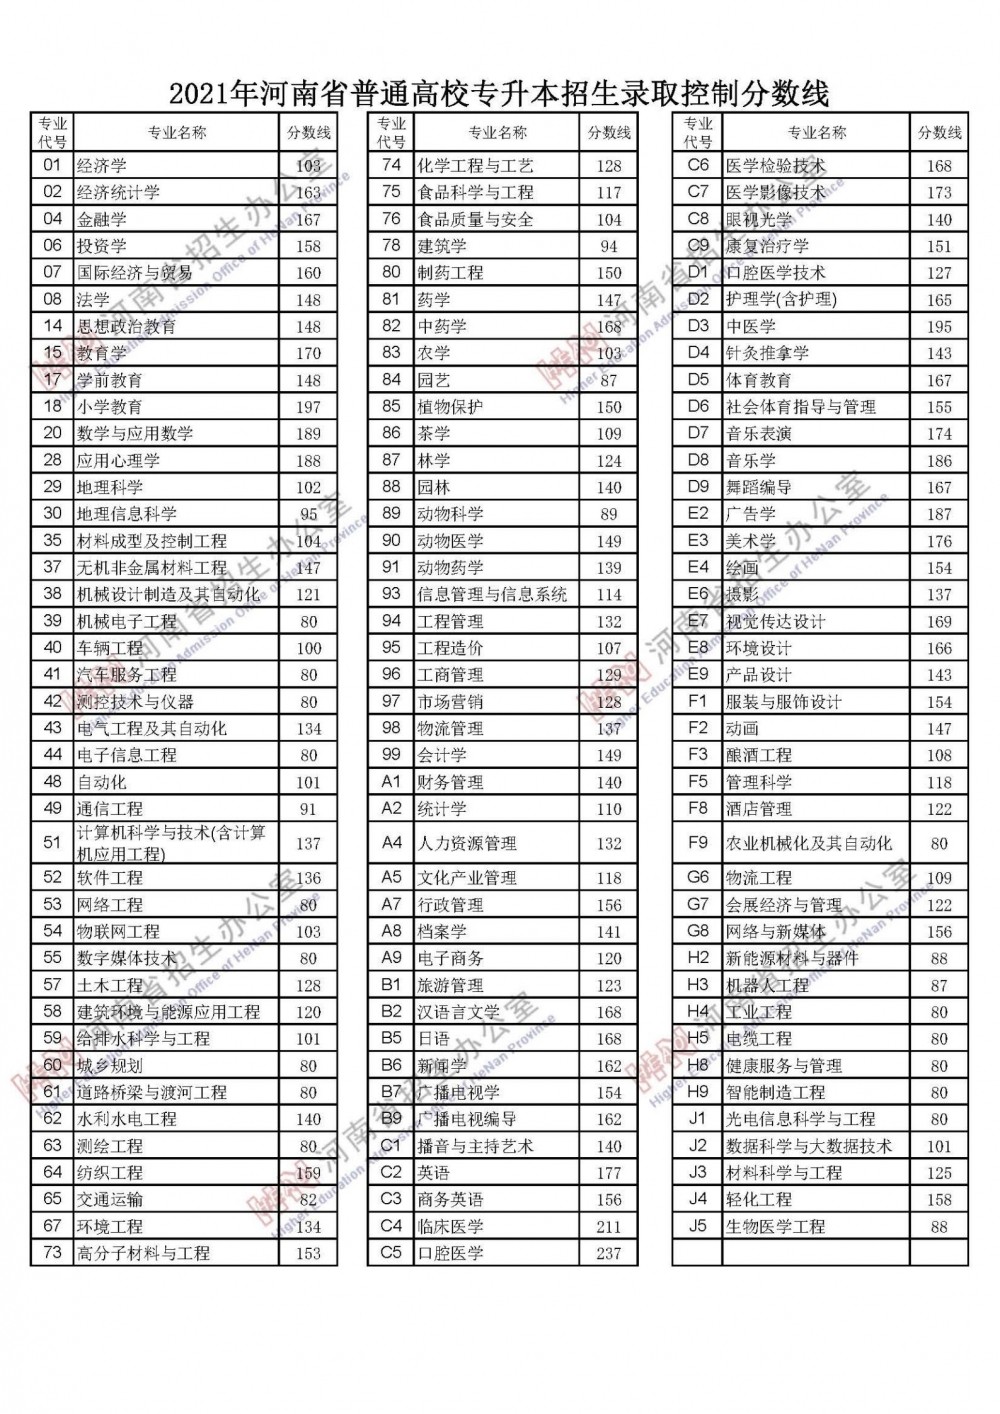 2022年河南省高考录取分数线公布